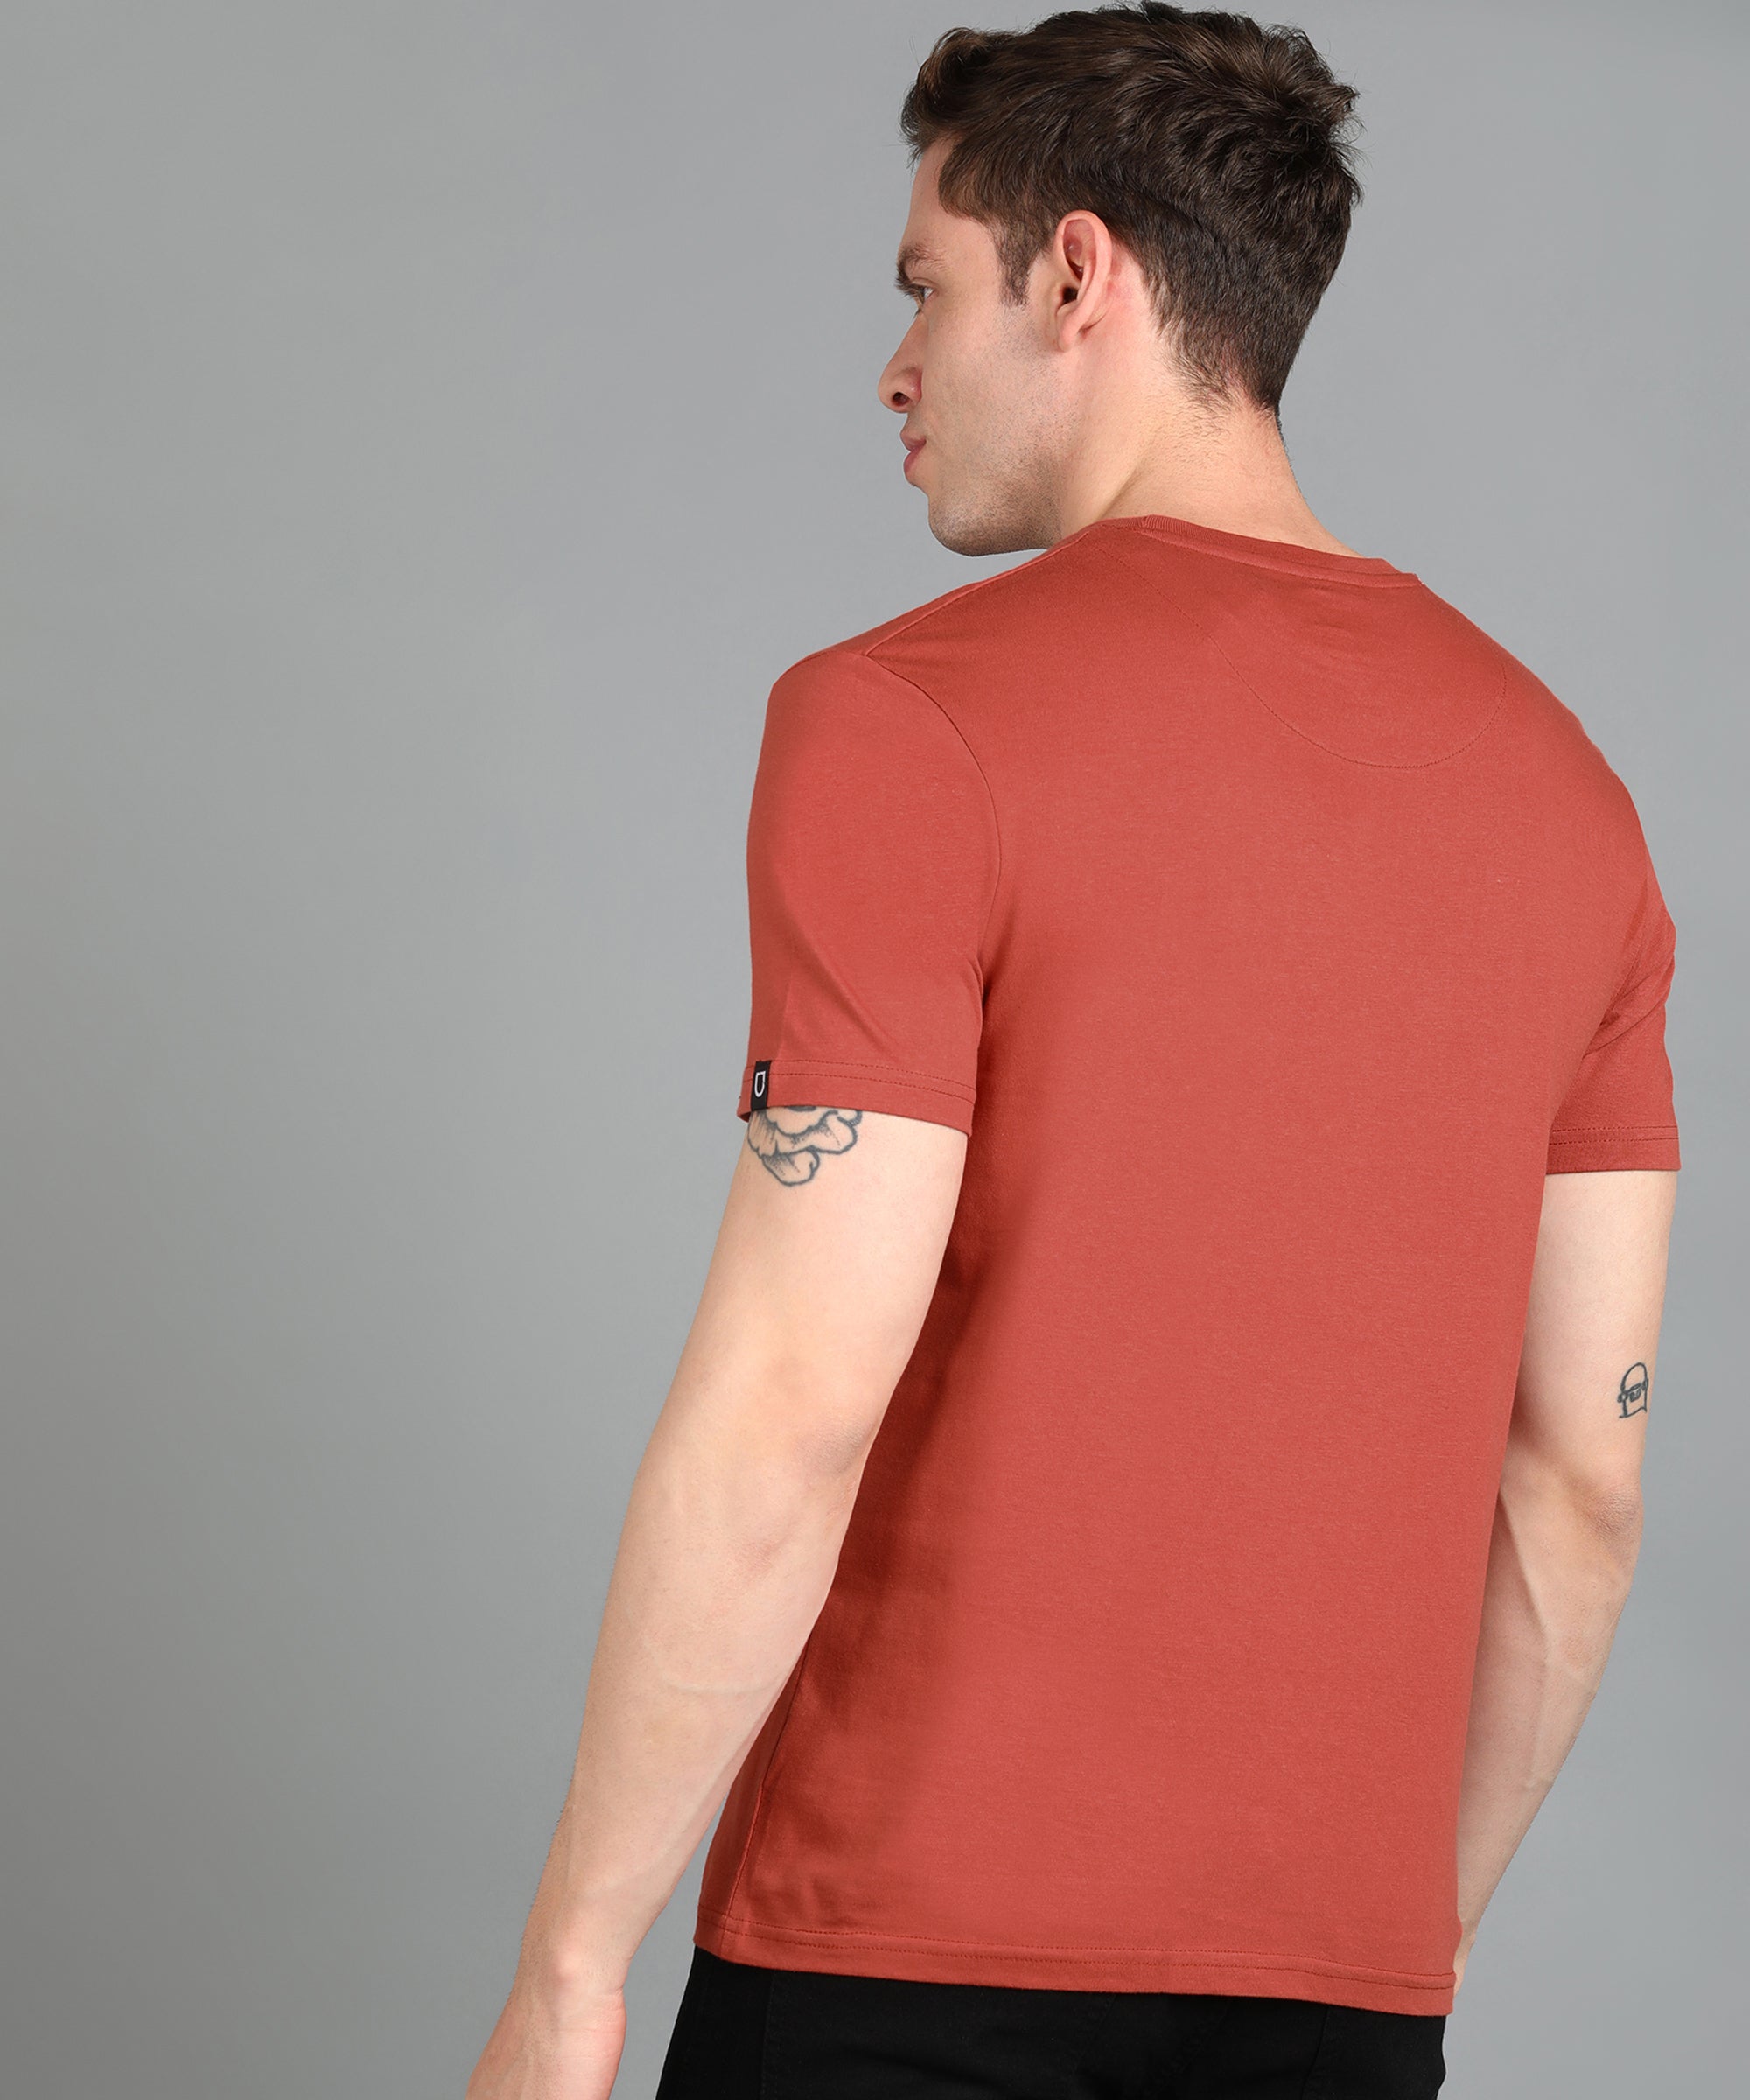 Men's Orange Graphic Printed Round Neck Half Sleeve Slim Fit Cotton T-Shirt